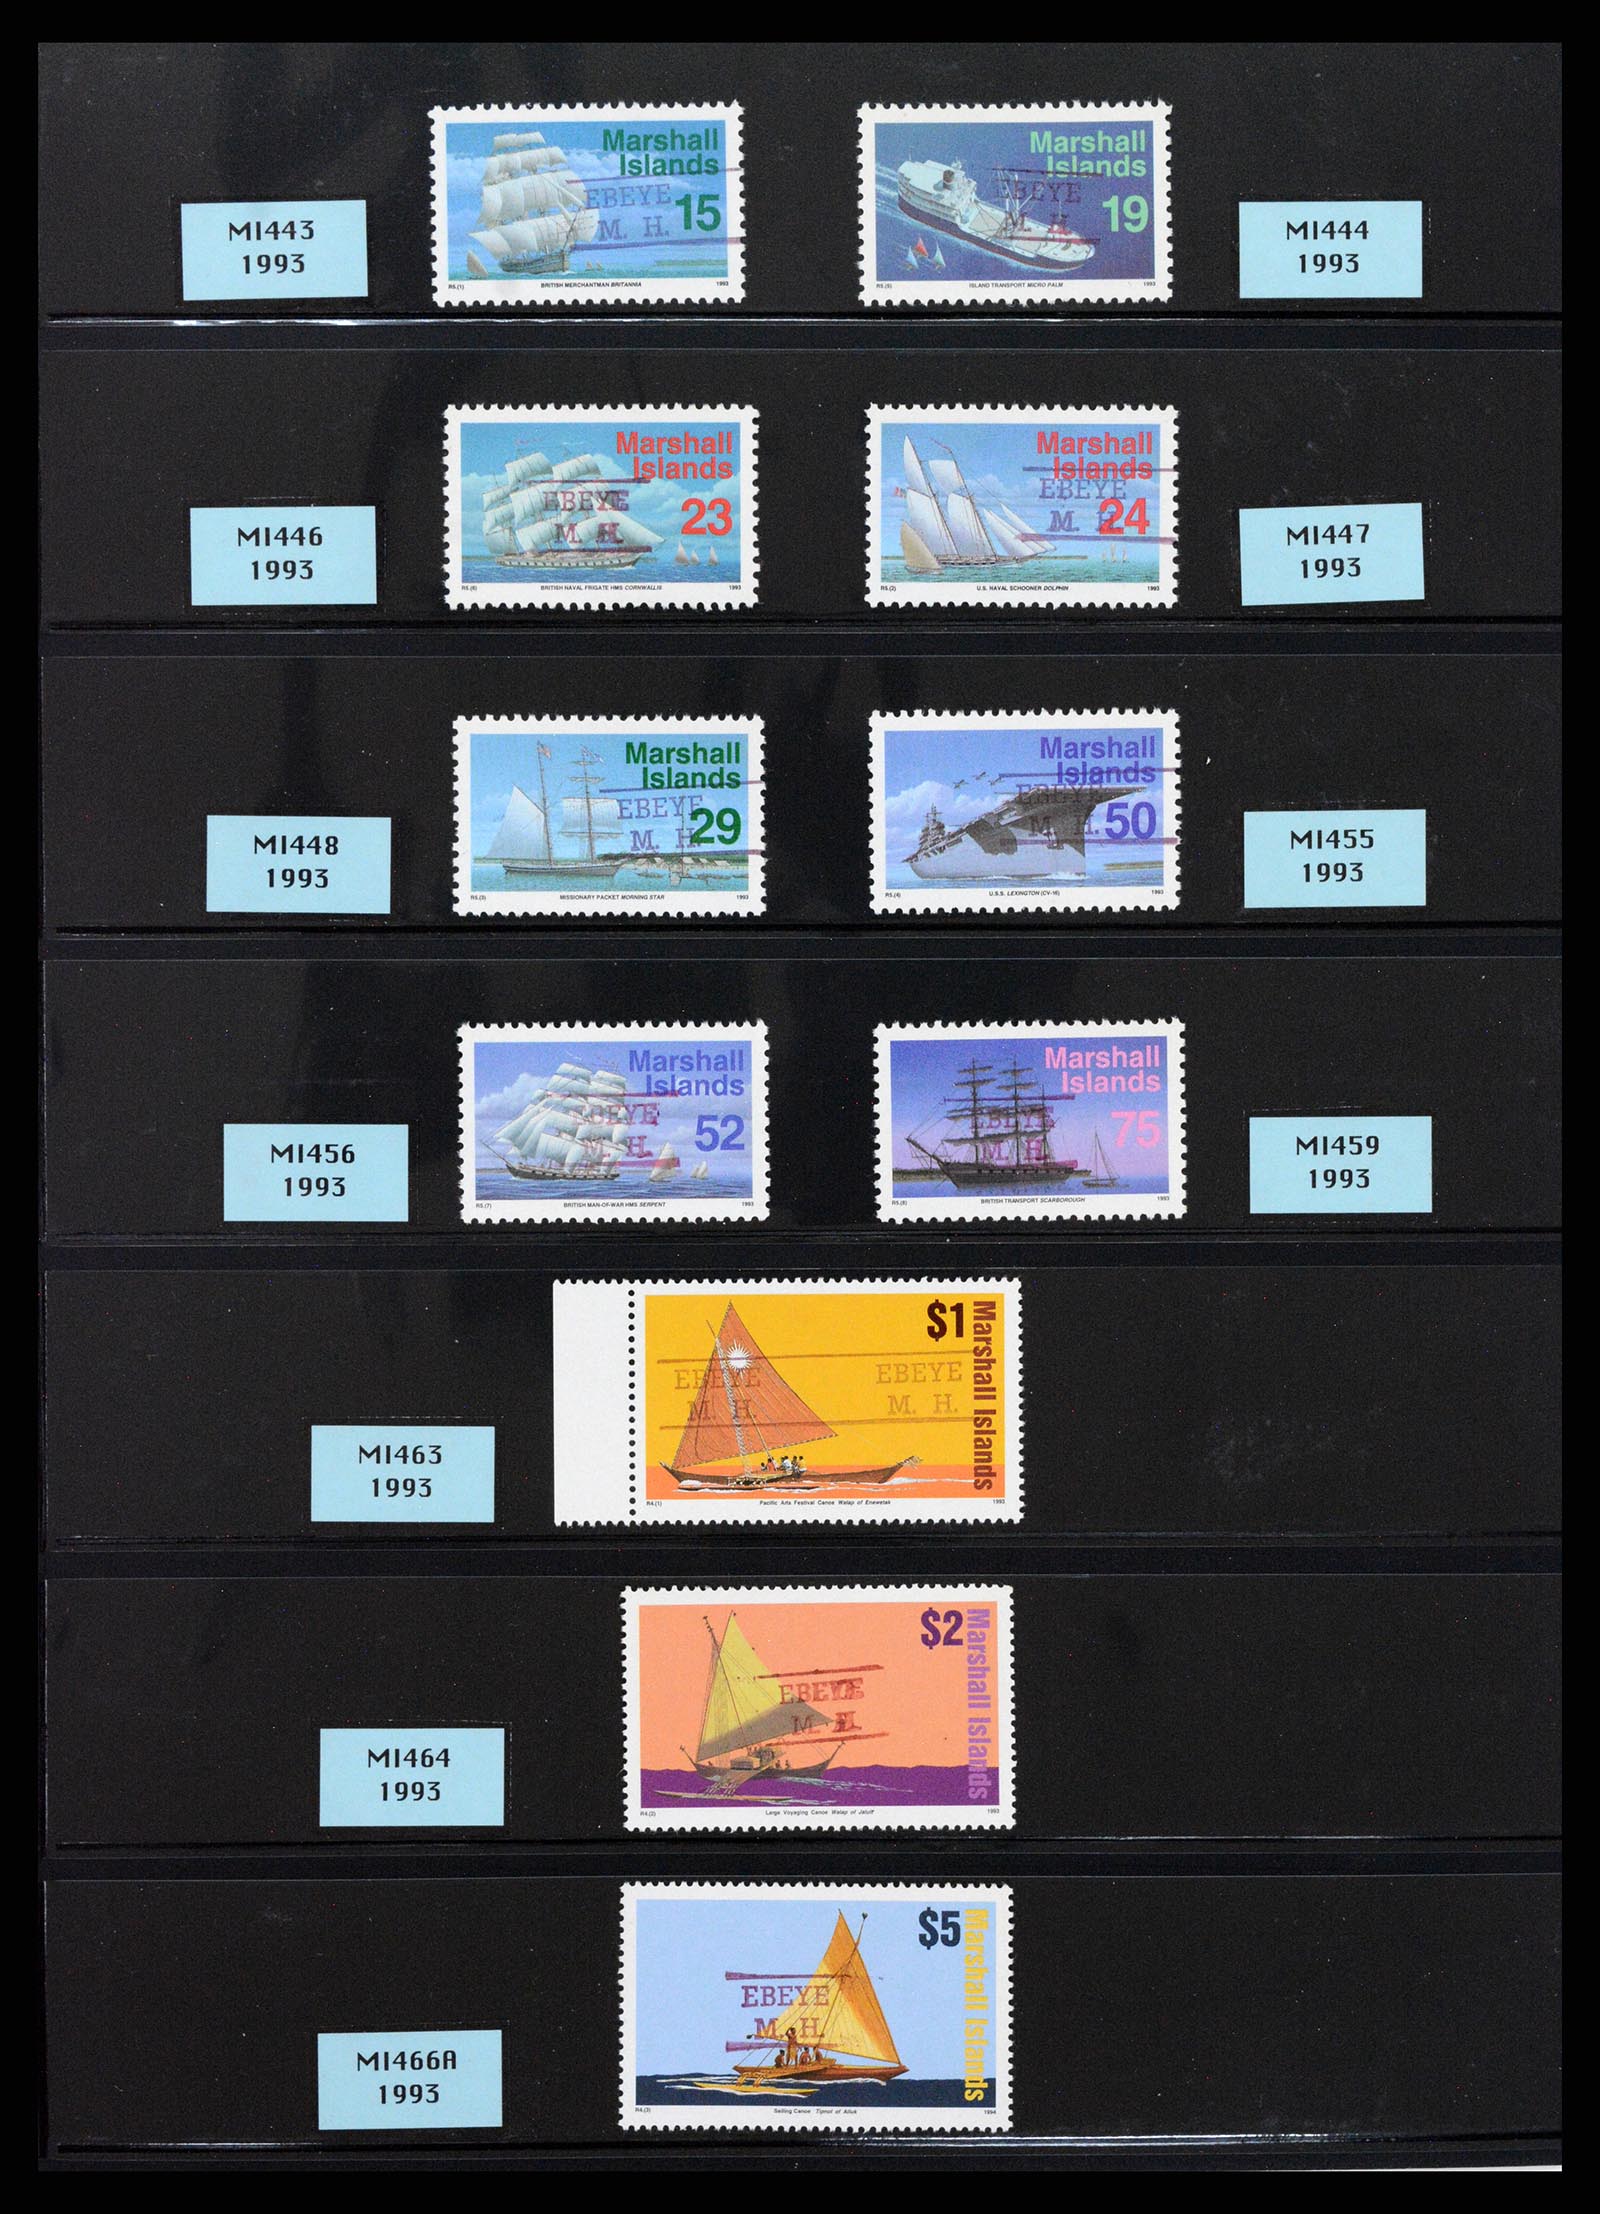 37736 004 - Postzegelverzameling 37736 USA gebieden pre-cancels 1959-1995.